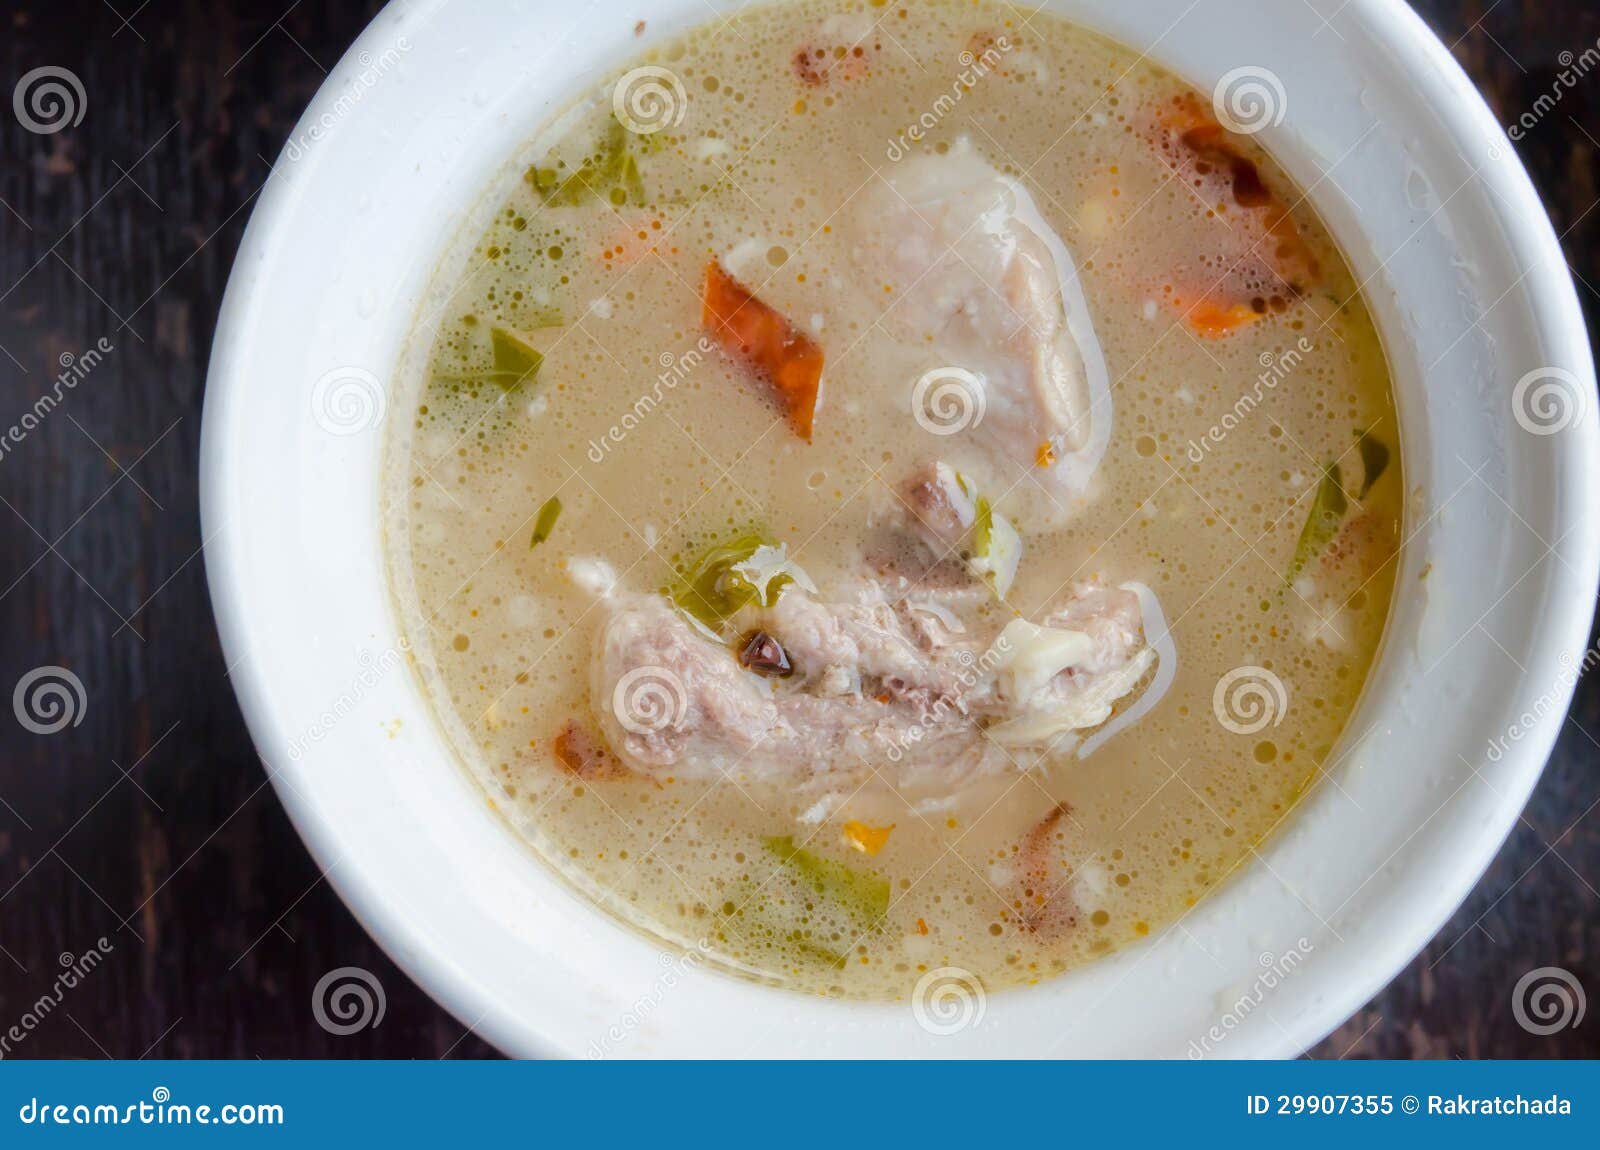 Прокисший суп как понять. Суп прокис. Кислый суп. Кислыний суп. Фото прокисшего супа.